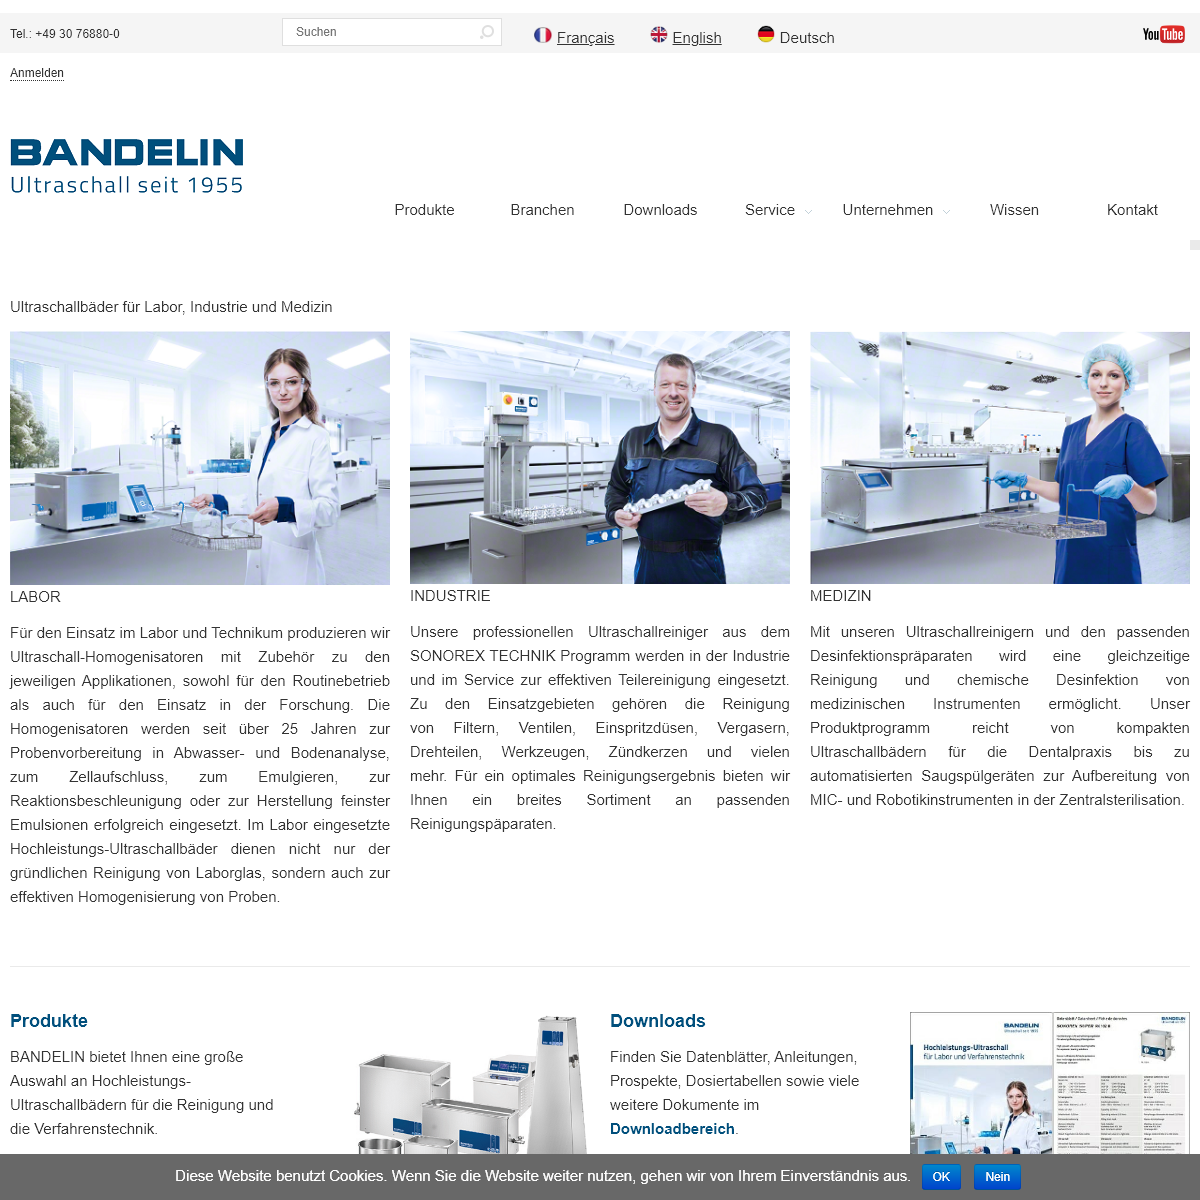 A complete backup of bandelin.com